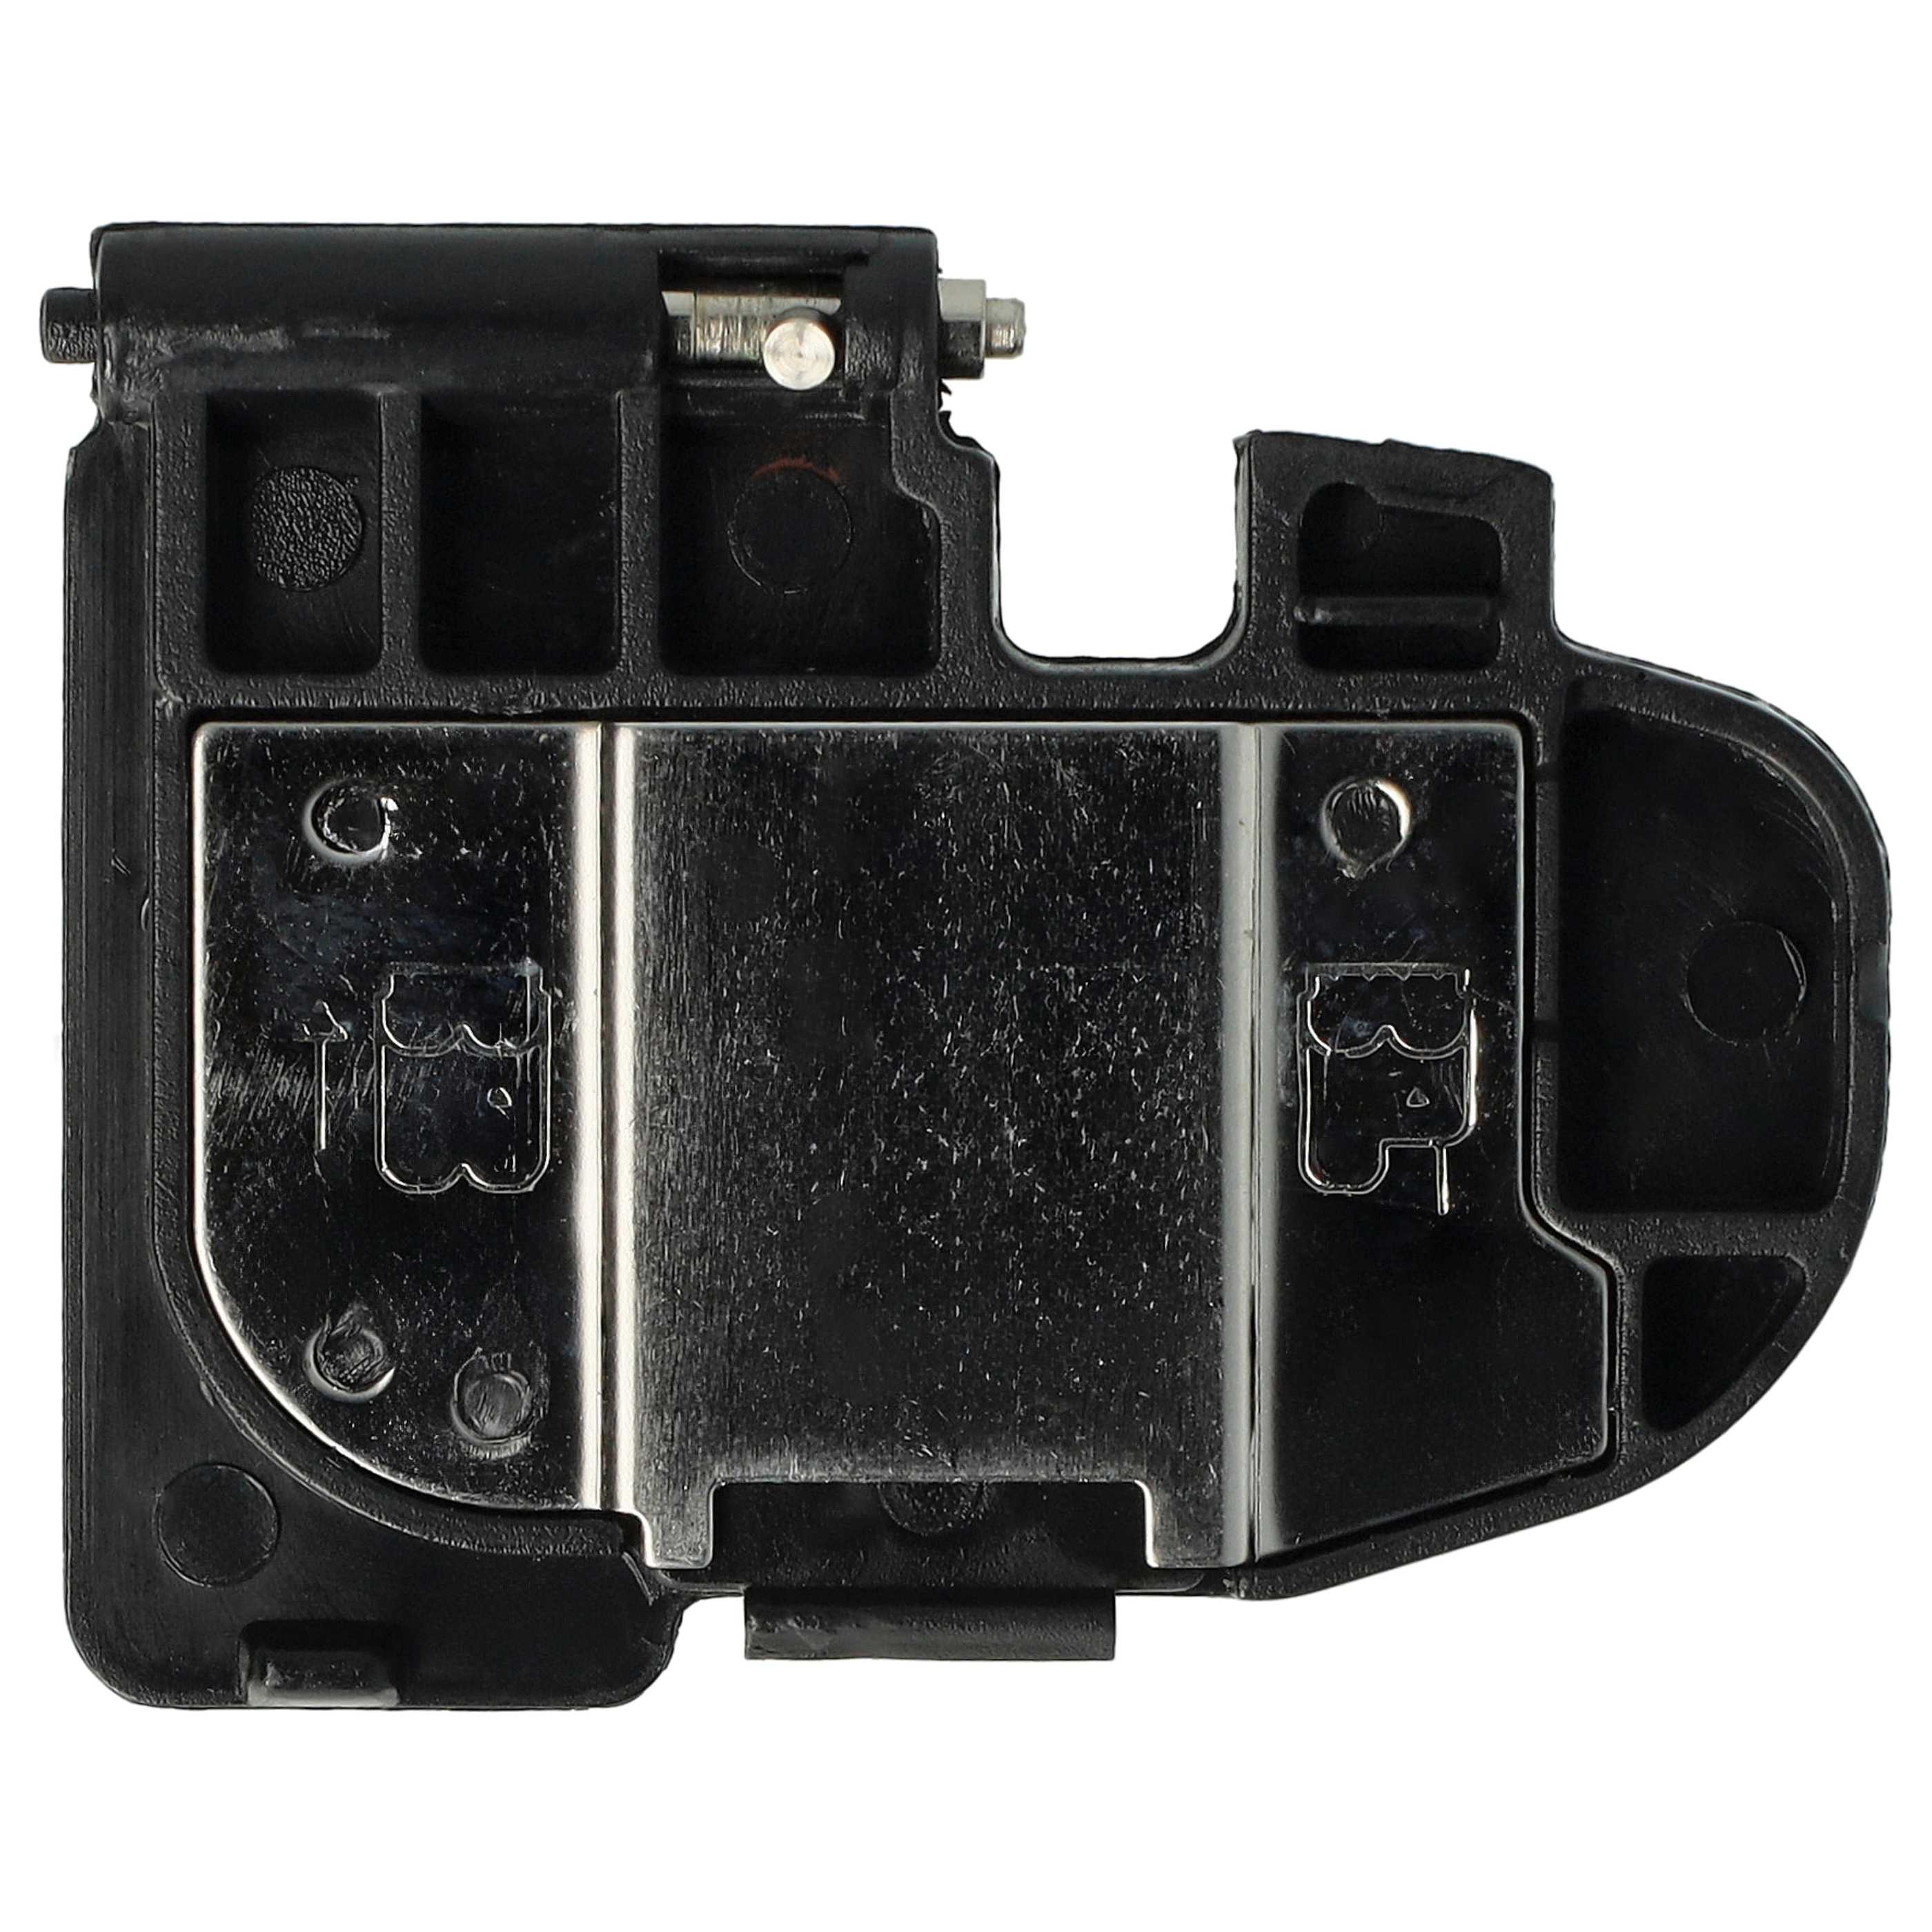 Couvercle de batterie pour appareil photo, grip Canon EOS 5D